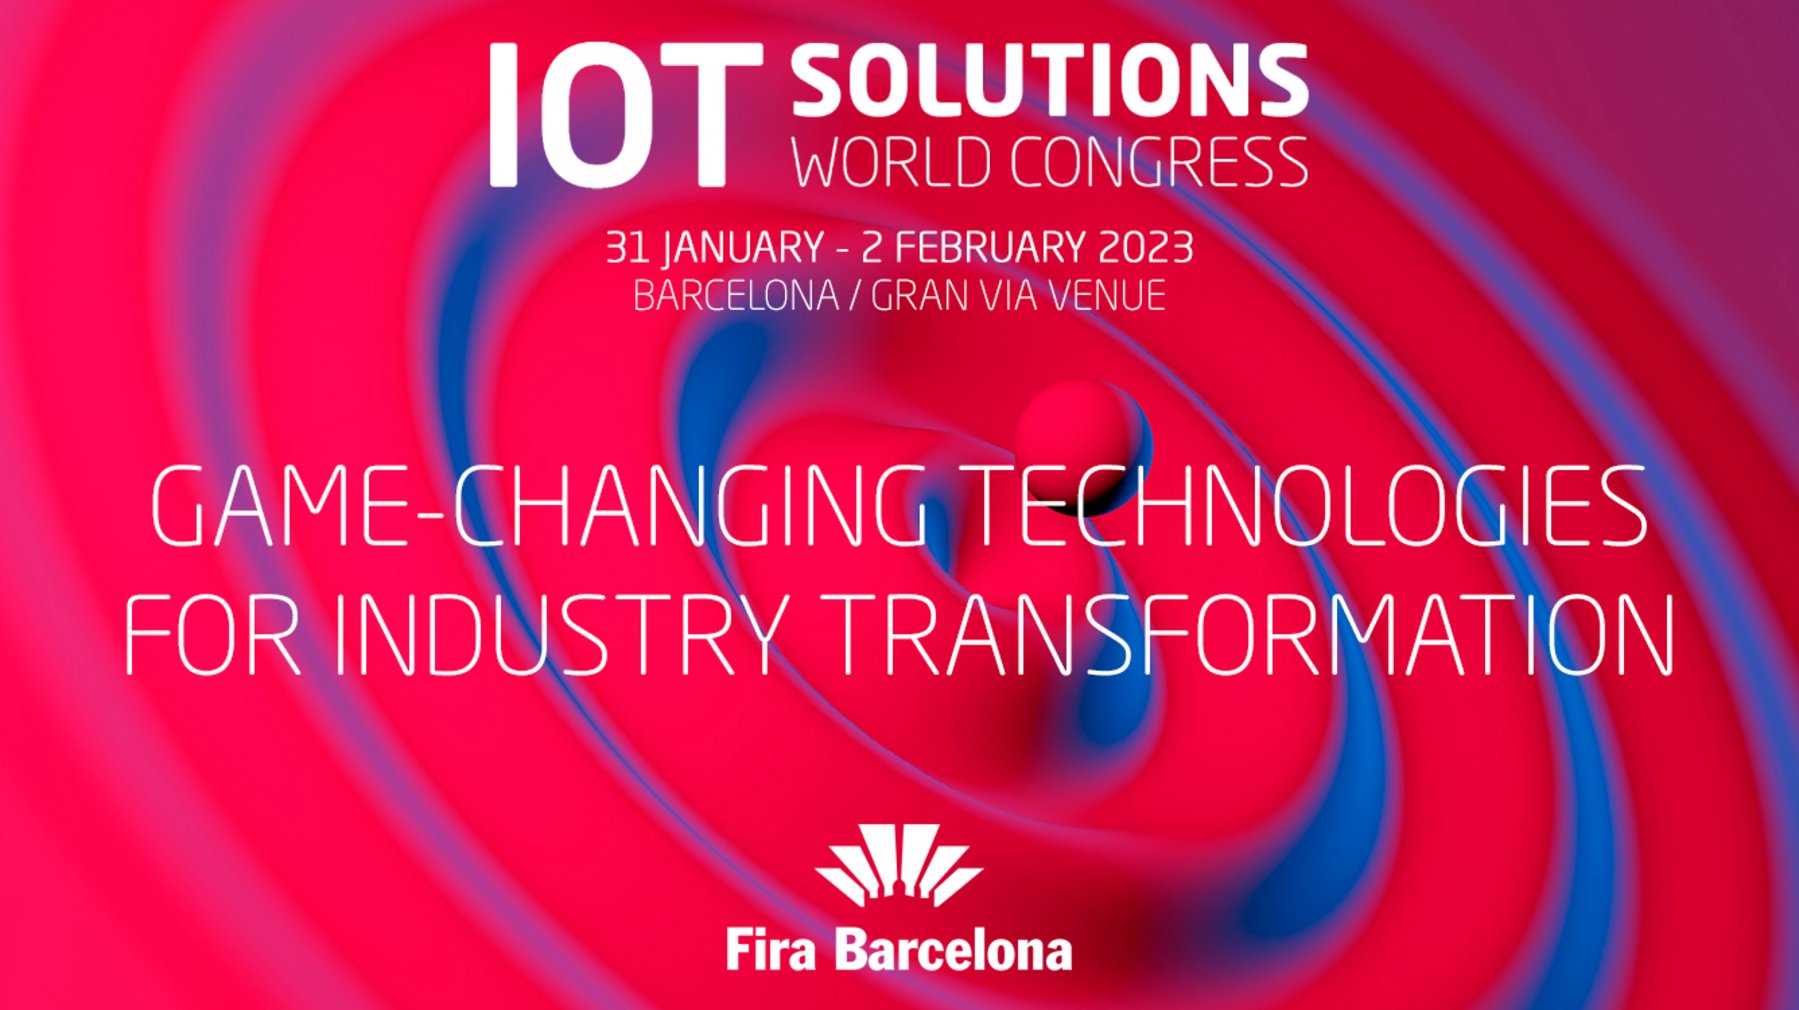 Salon mondial des solutions IoT